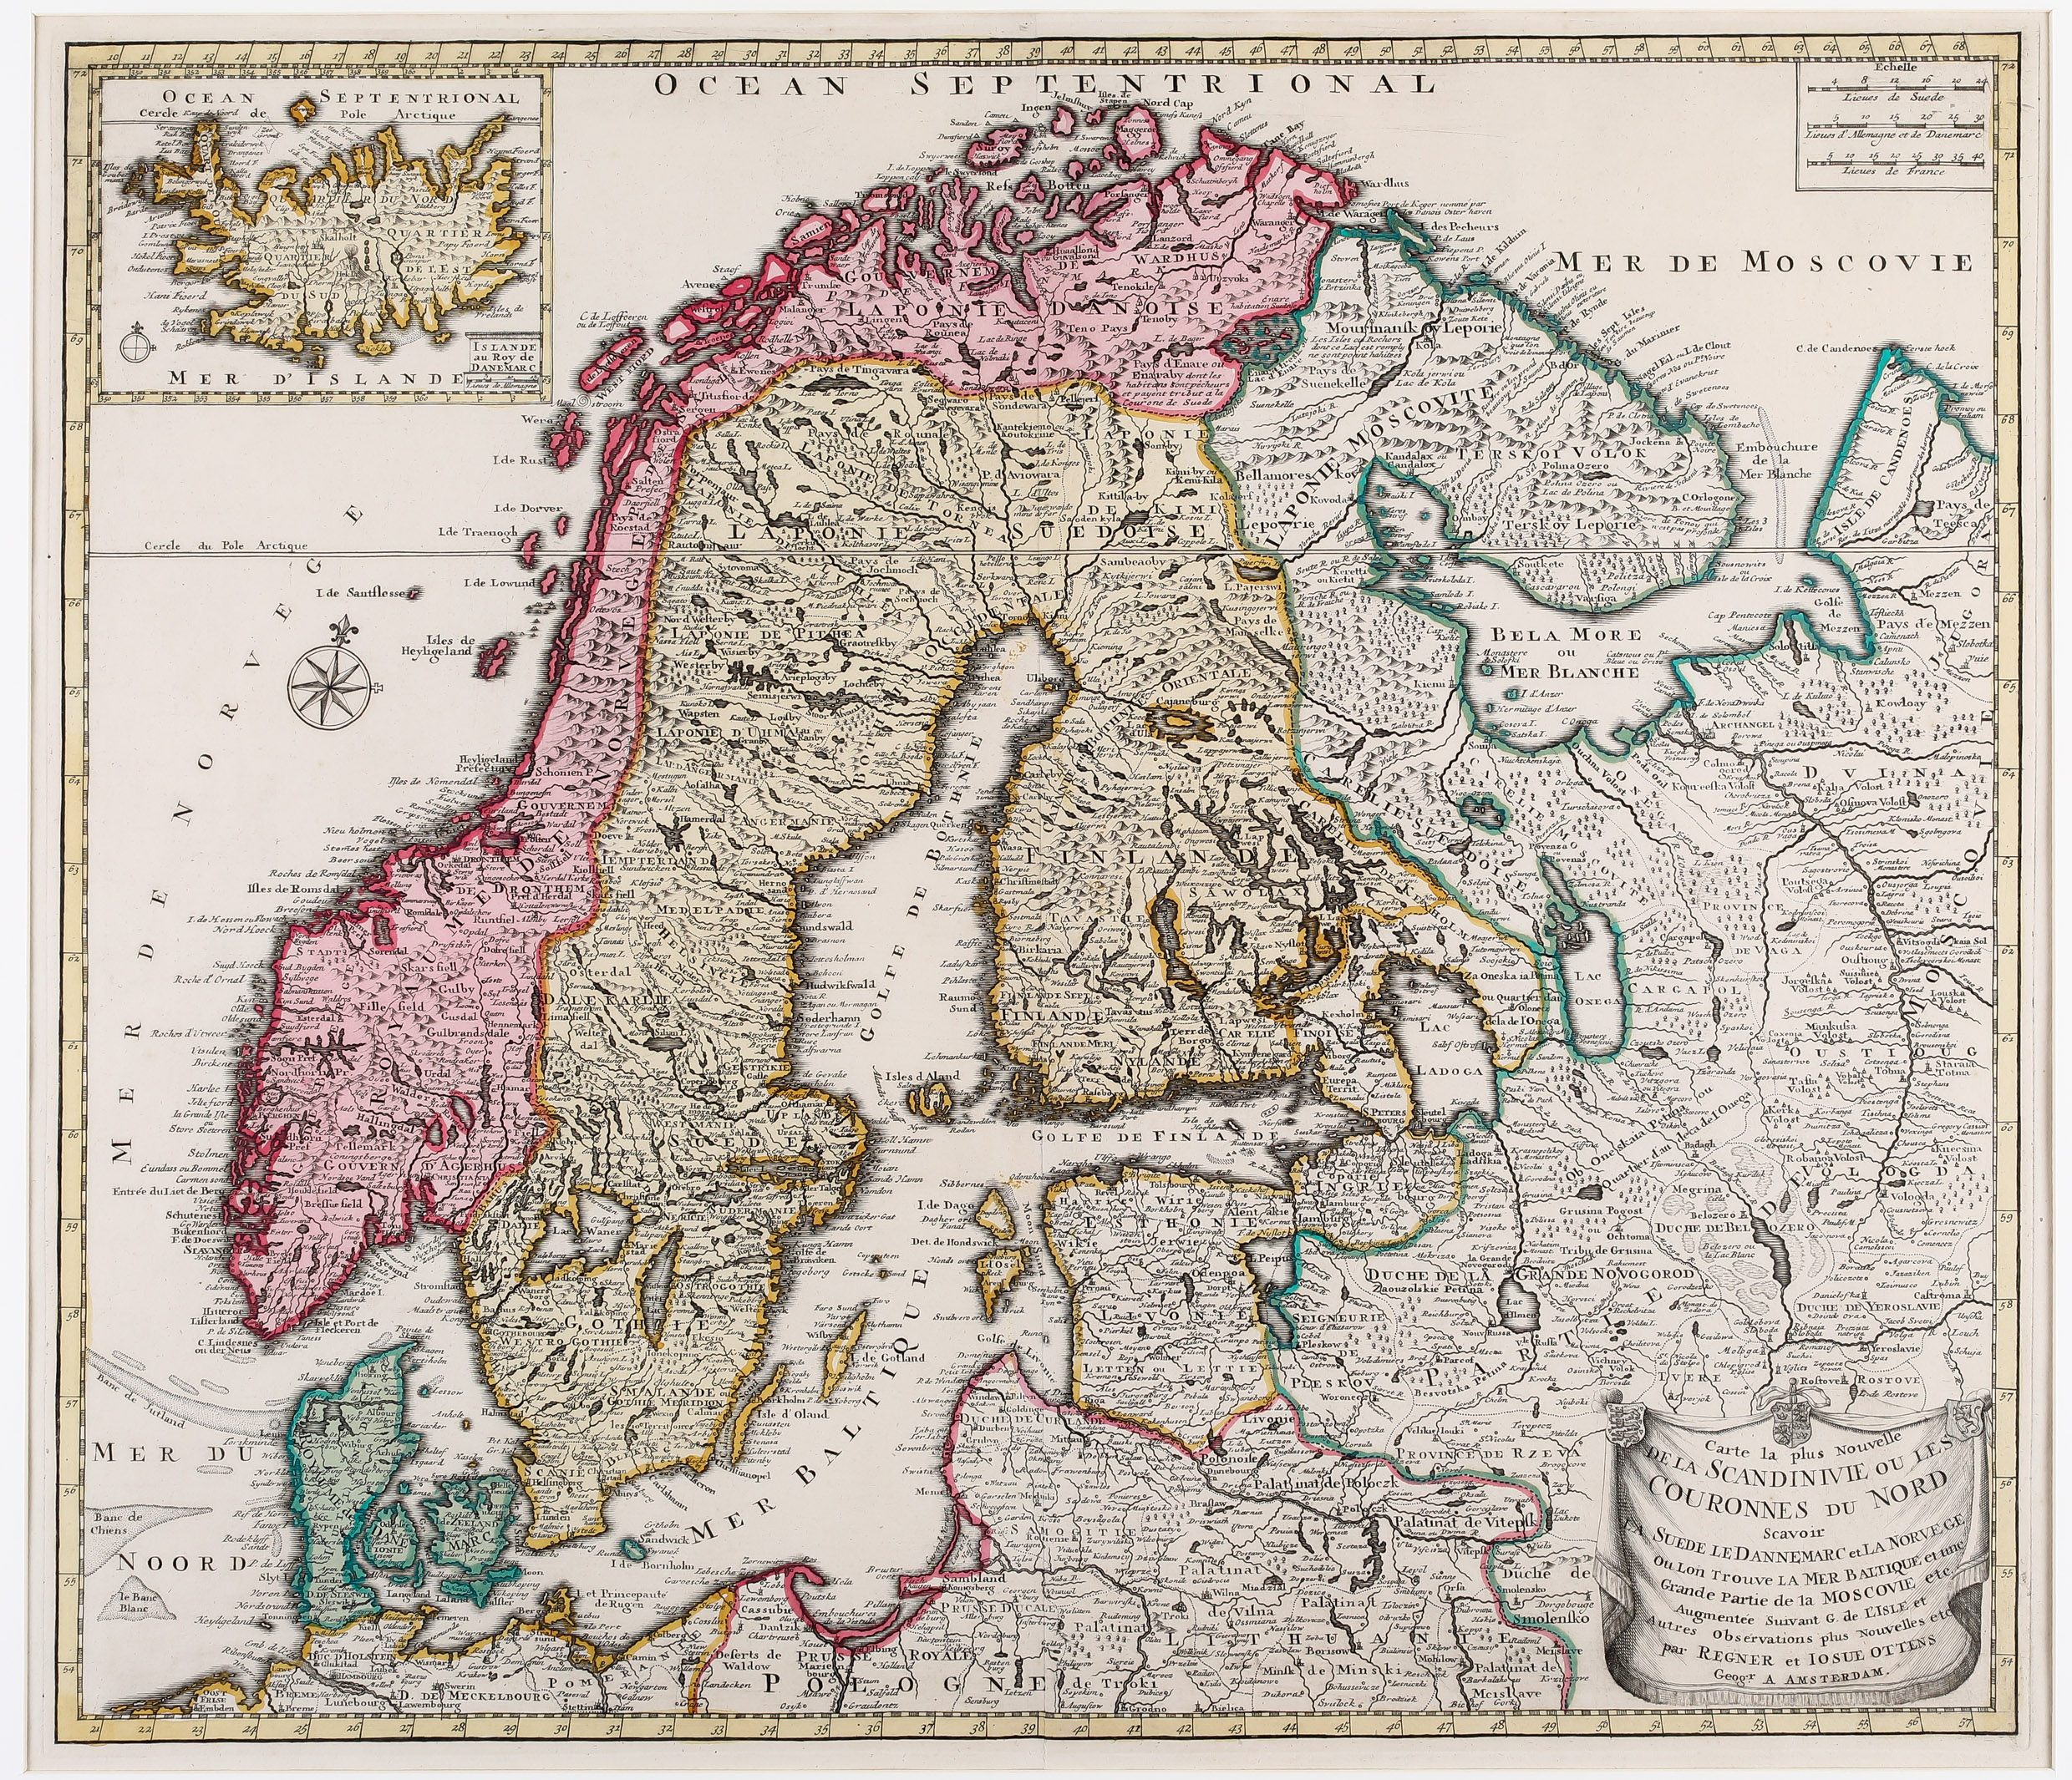 69. Carte la plus nouvelle de la Scandinavie ou les Couronnes  du Nord  scavoir